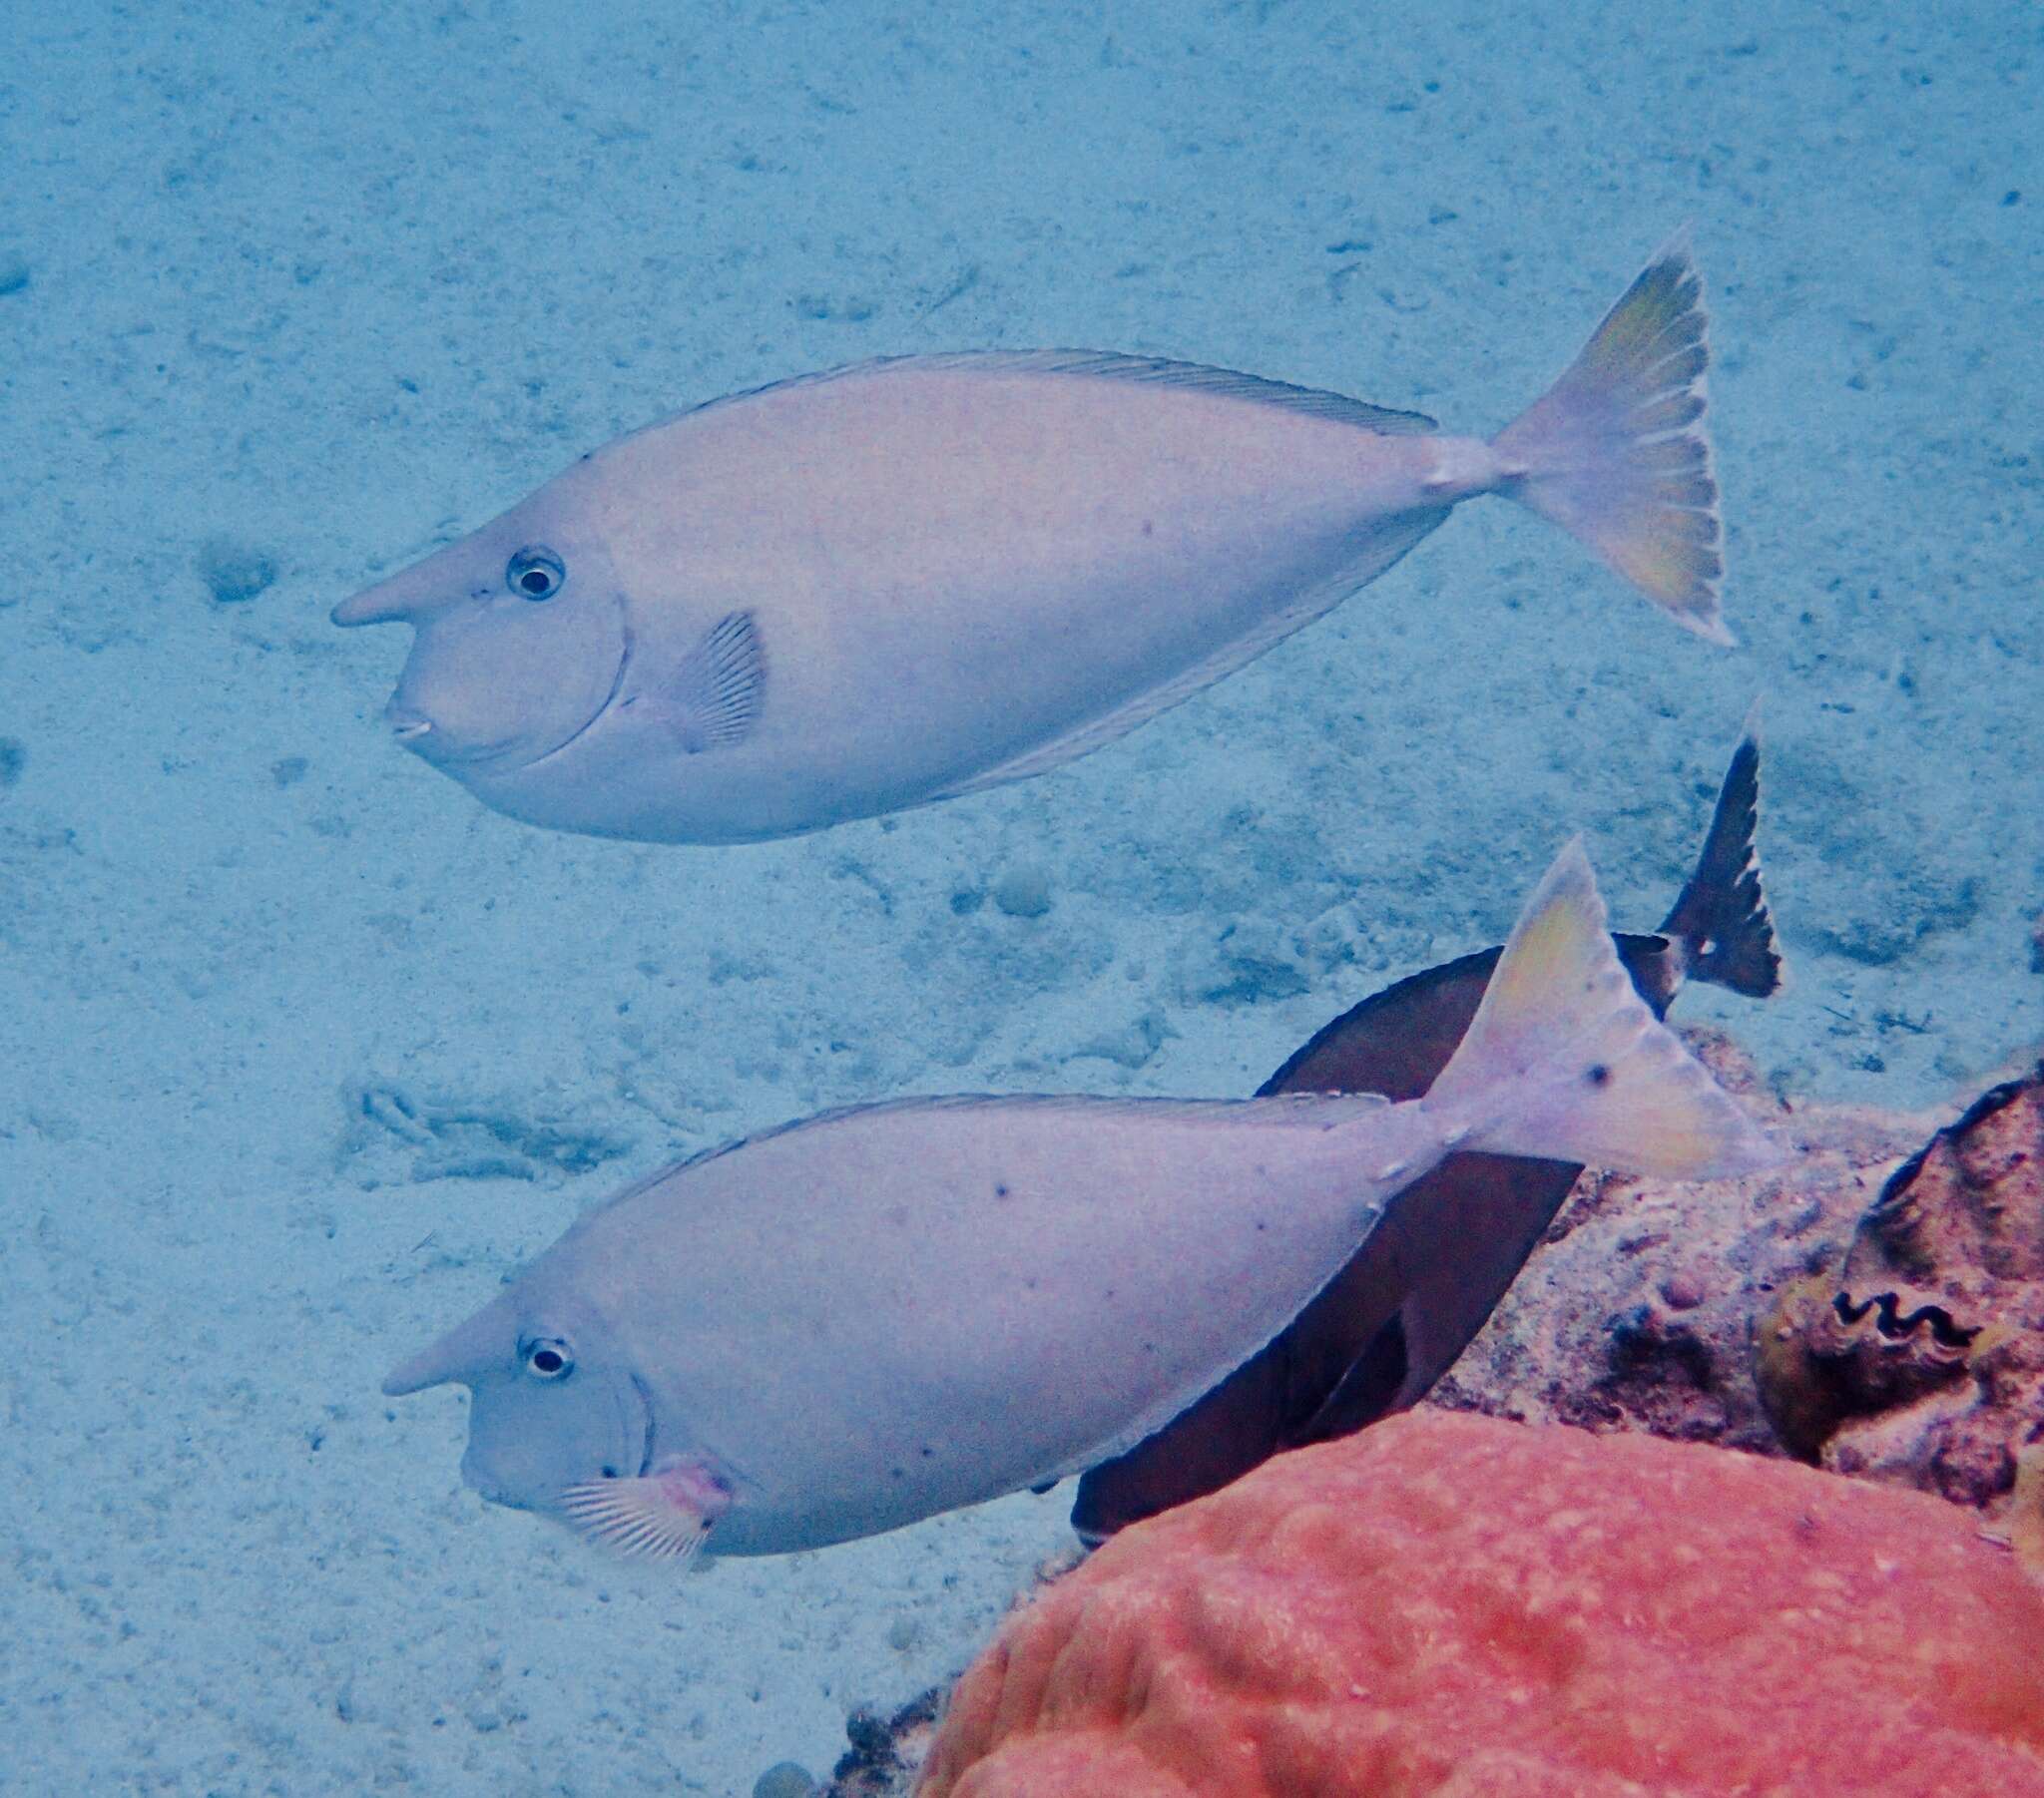 Image of Banded Unicornfish